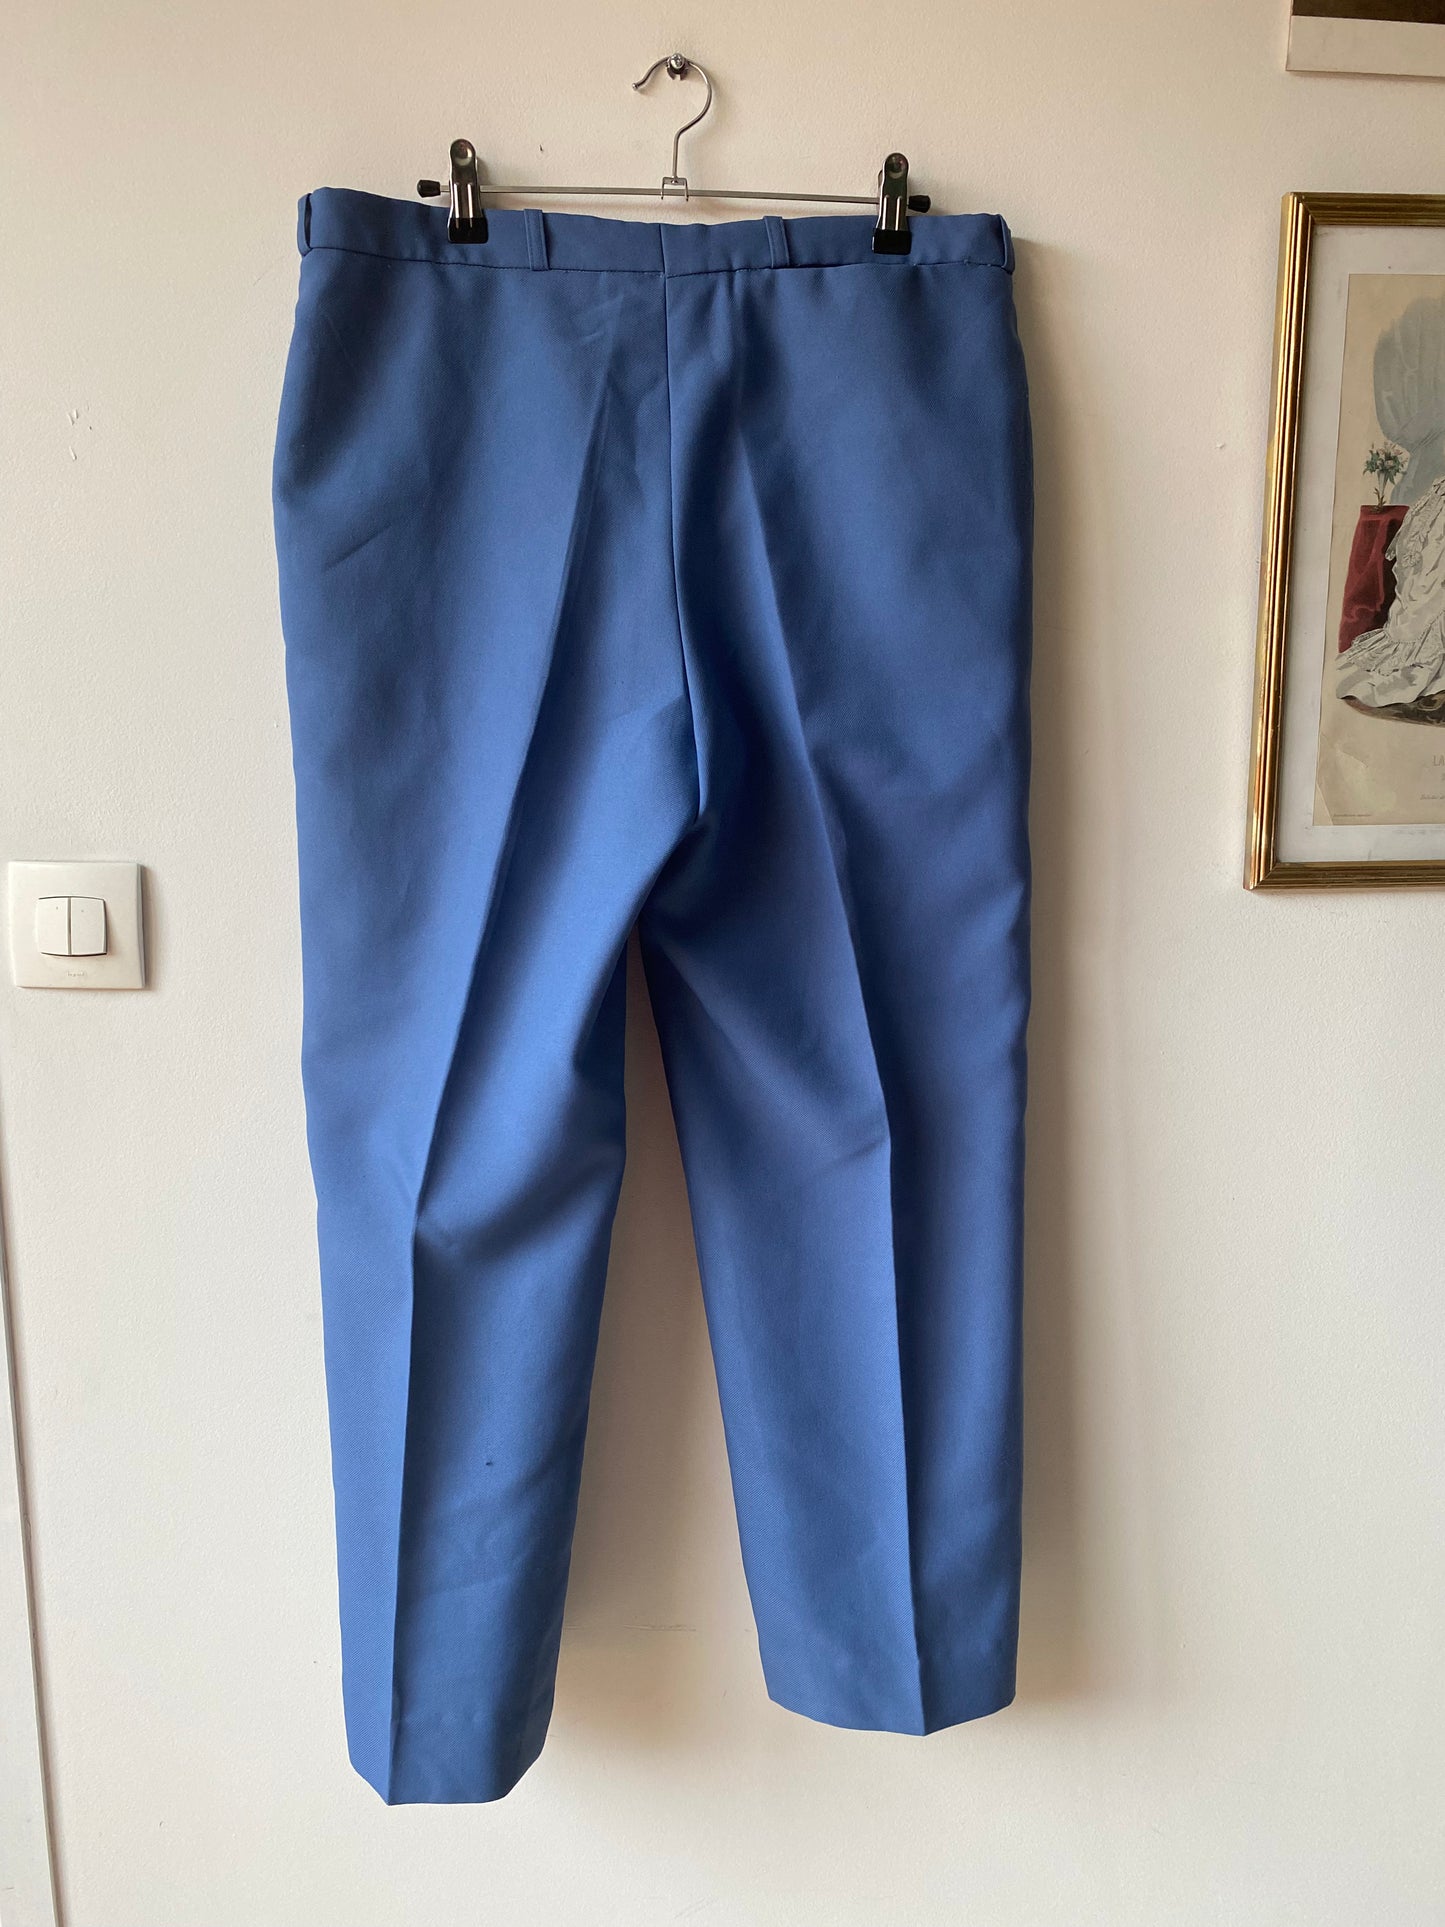 Pantalon bleu 70s